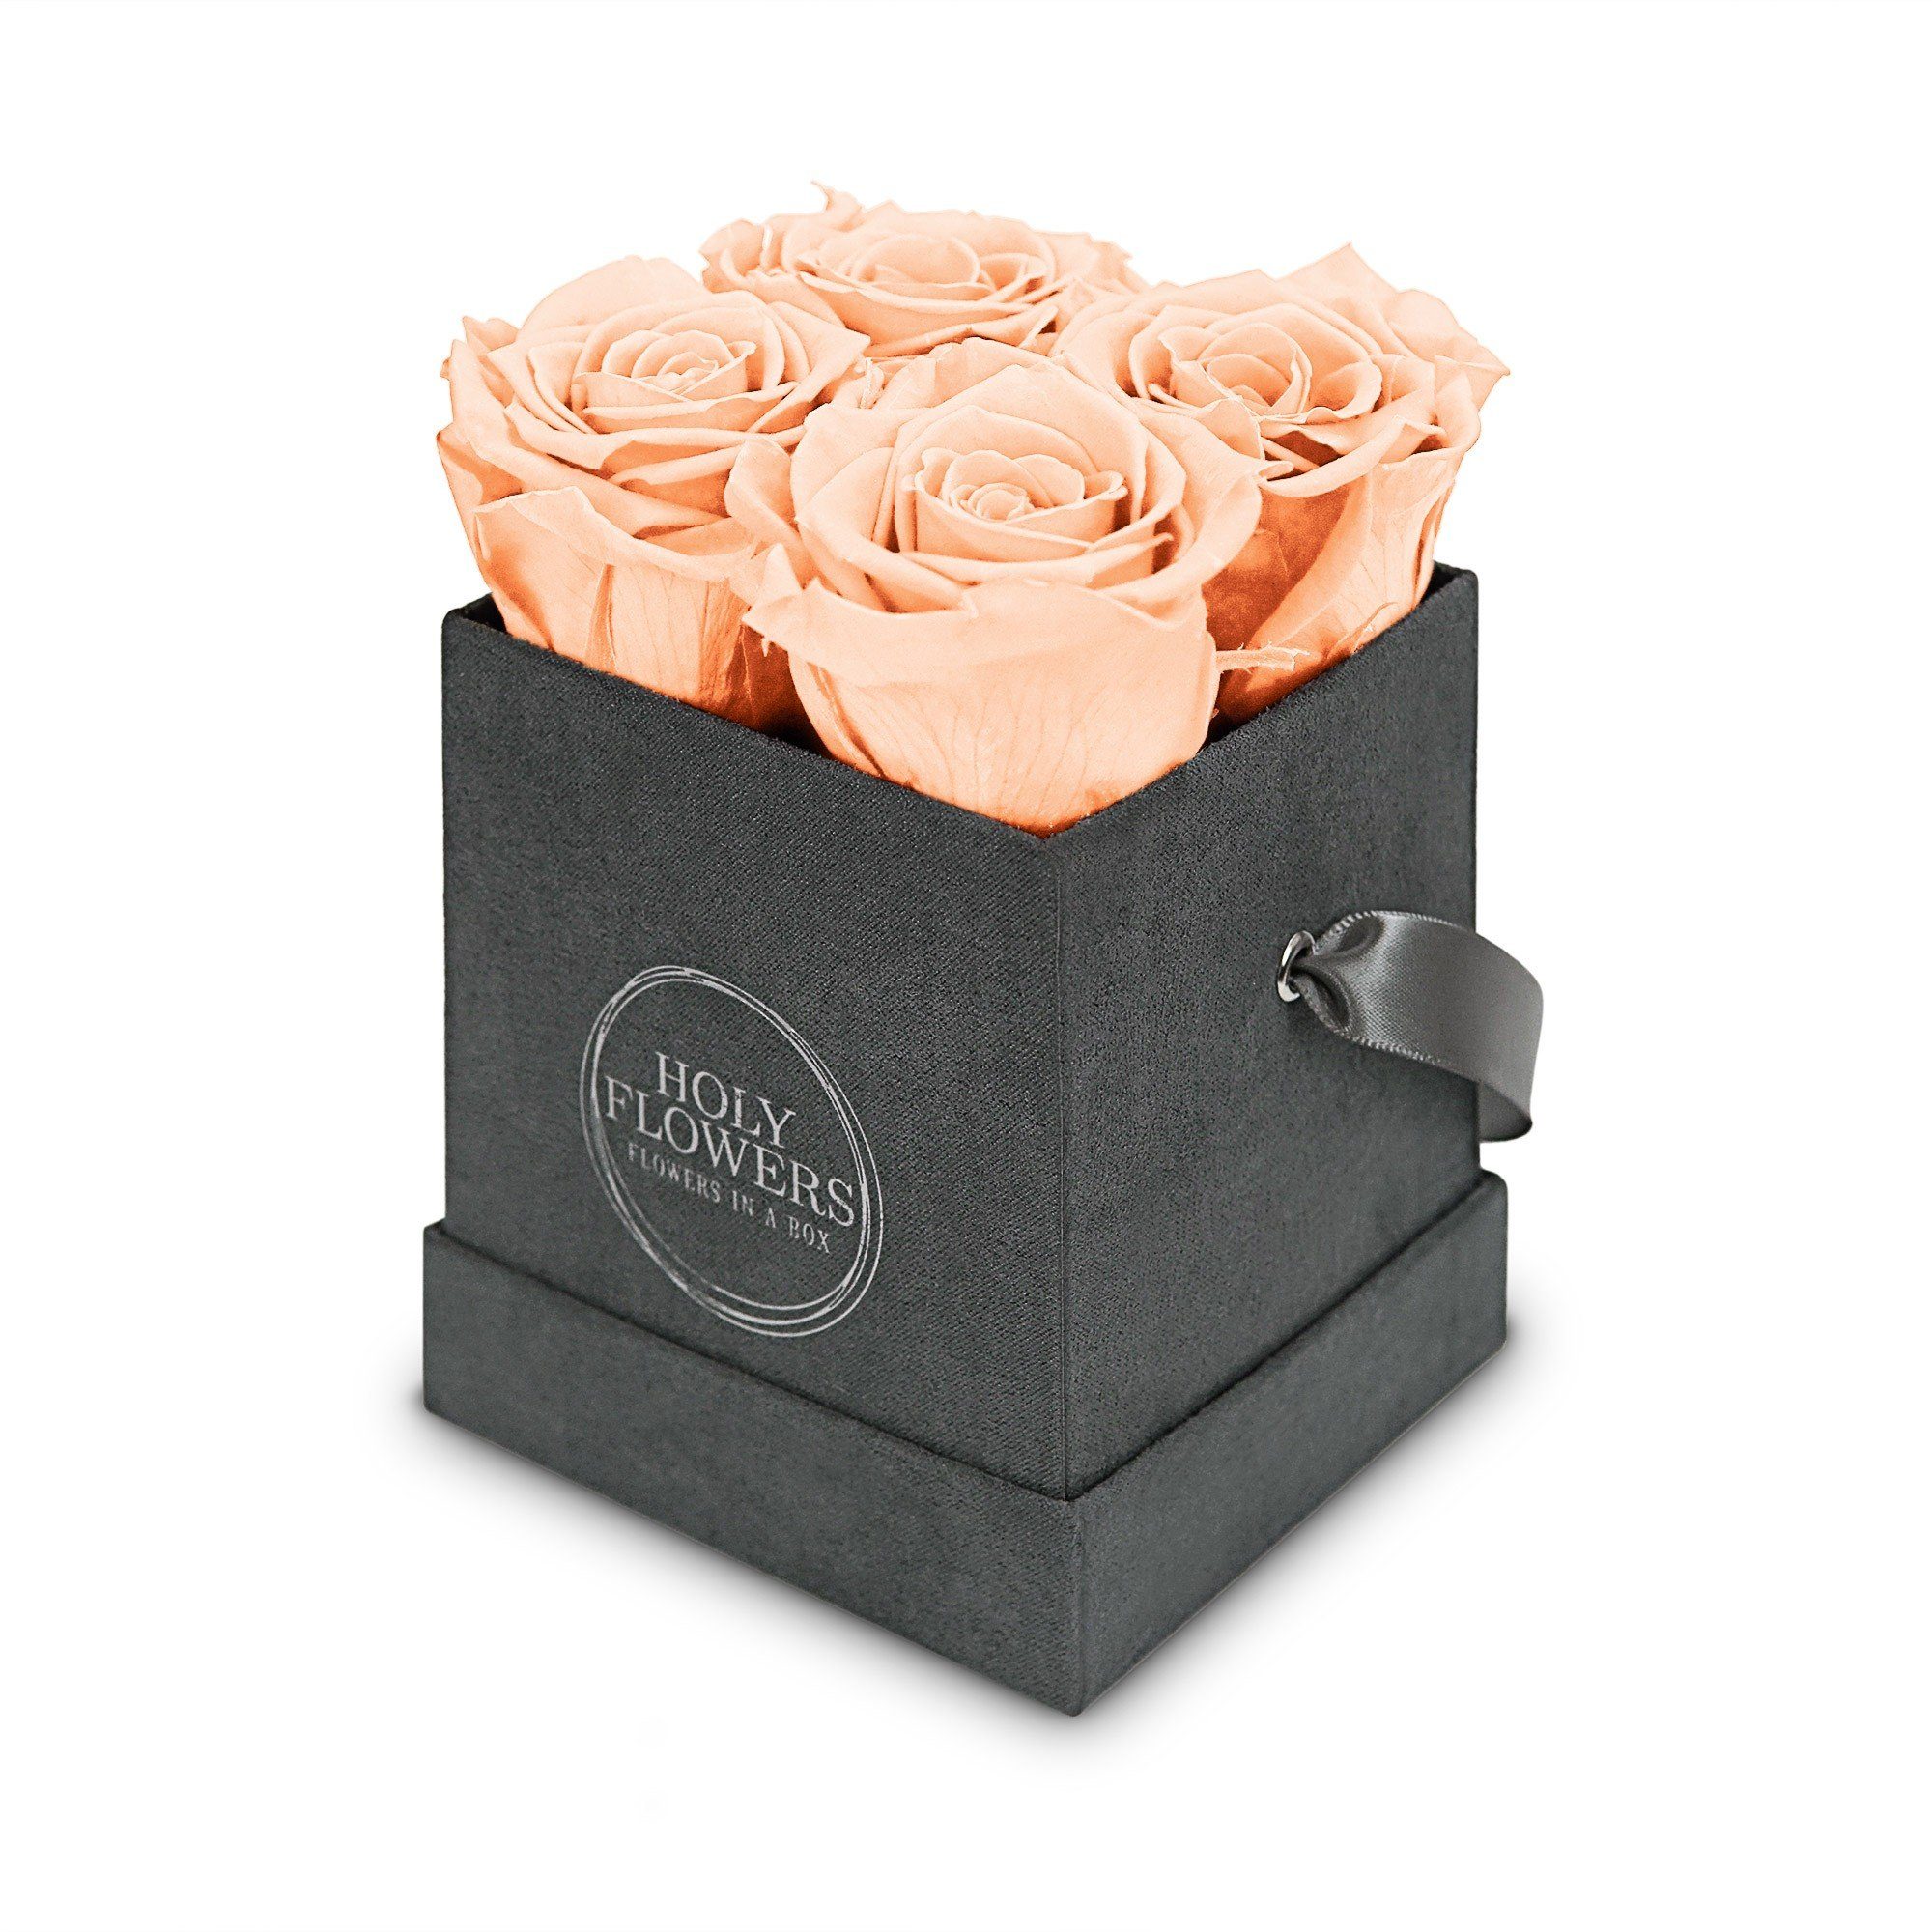 Kunstblume Eckige Rosenbox aus Samt mit 4-5 Infinity Rosen I 3 Jahre haltbar I Echte, duftende konservierte Blumen I by Raul Richter Infinity Rose, Holy Flowers, Höhe 11 cm Peach